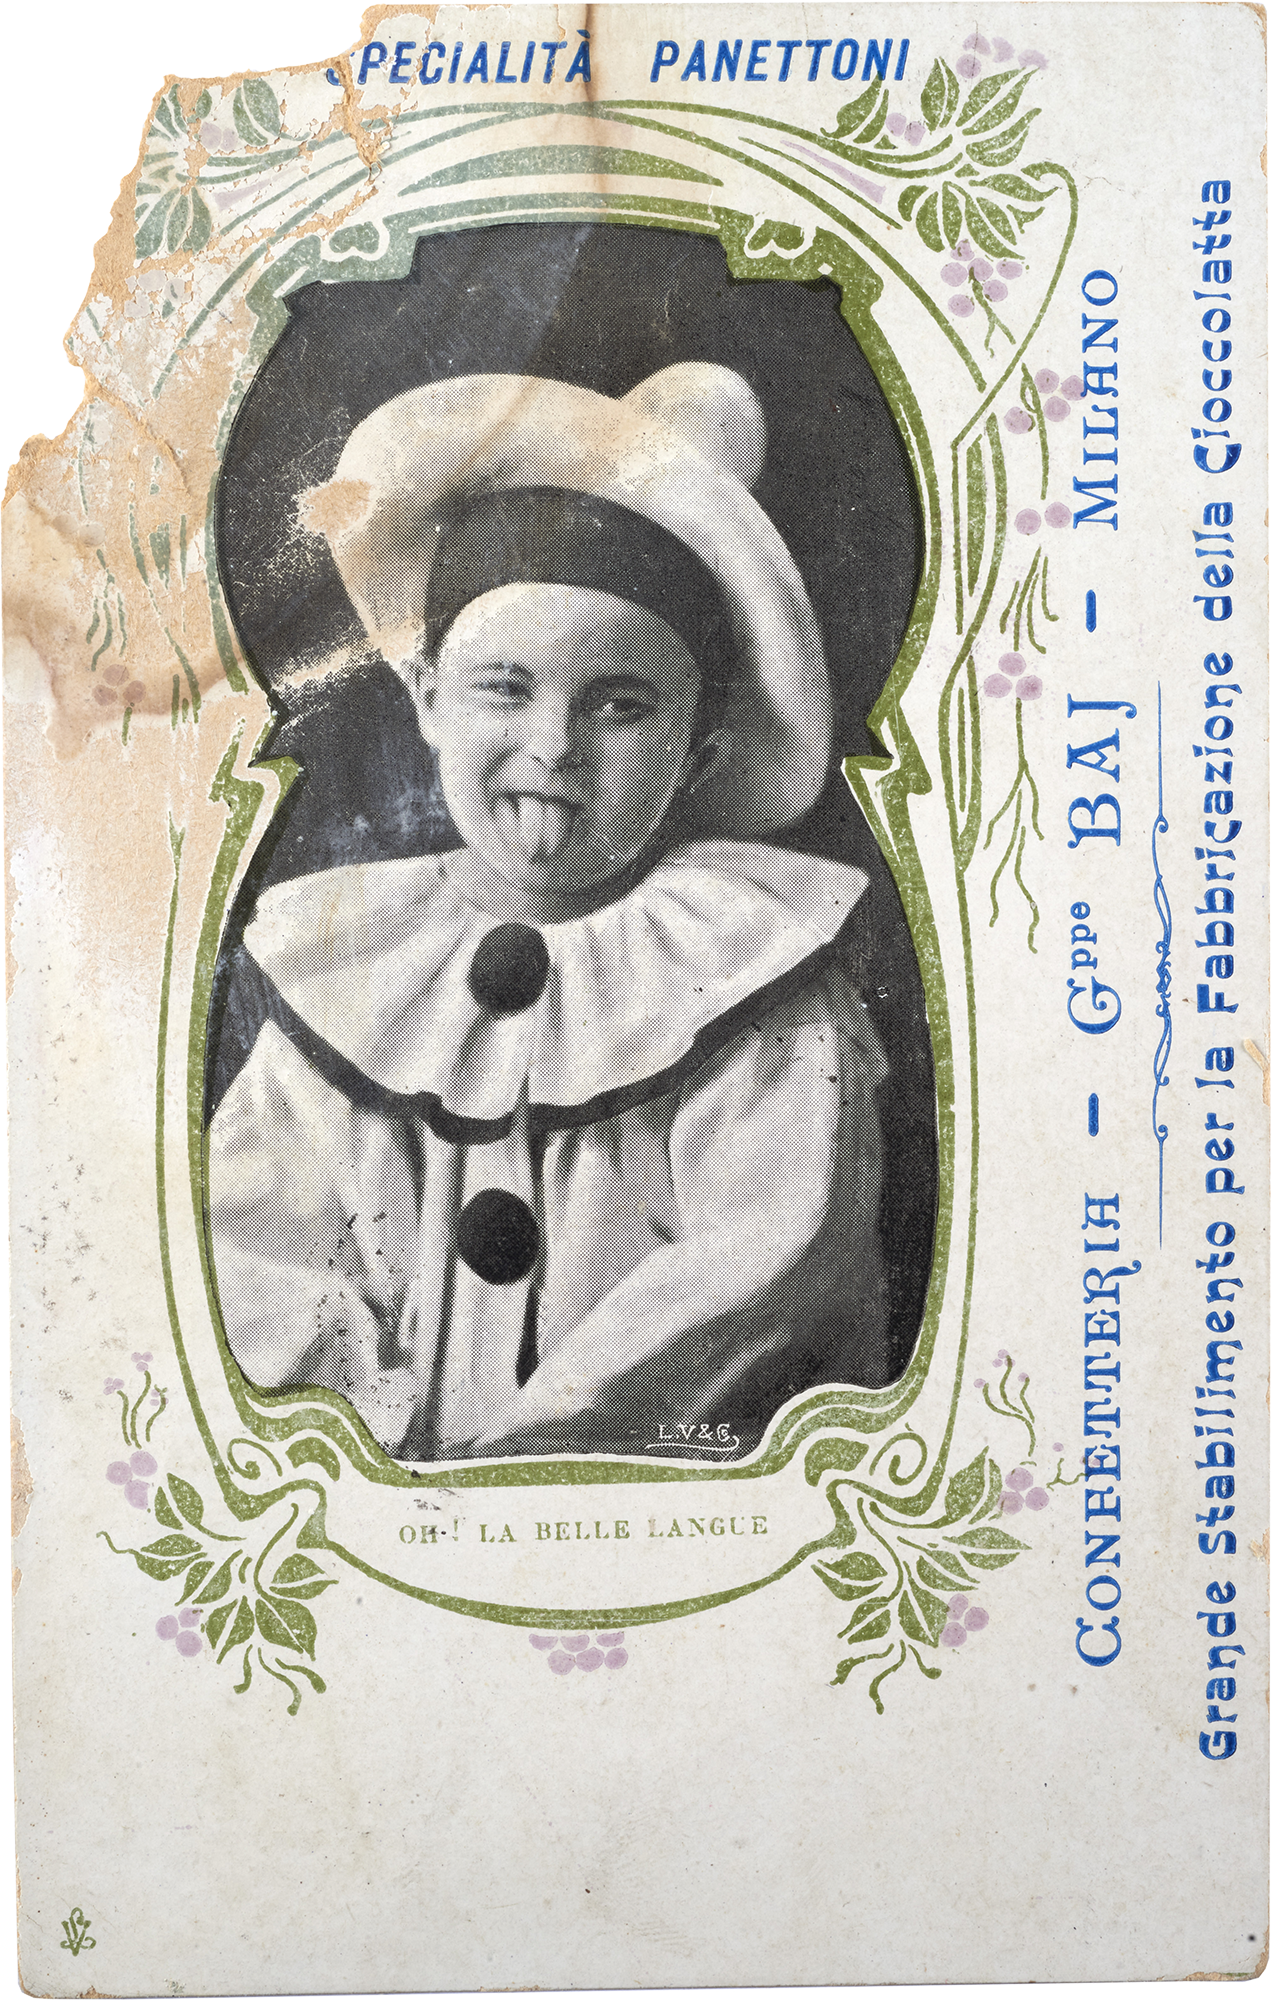 Cartolina della Confetteria Baj raffigurante un bambino - Specialità panettoni e cioccolata